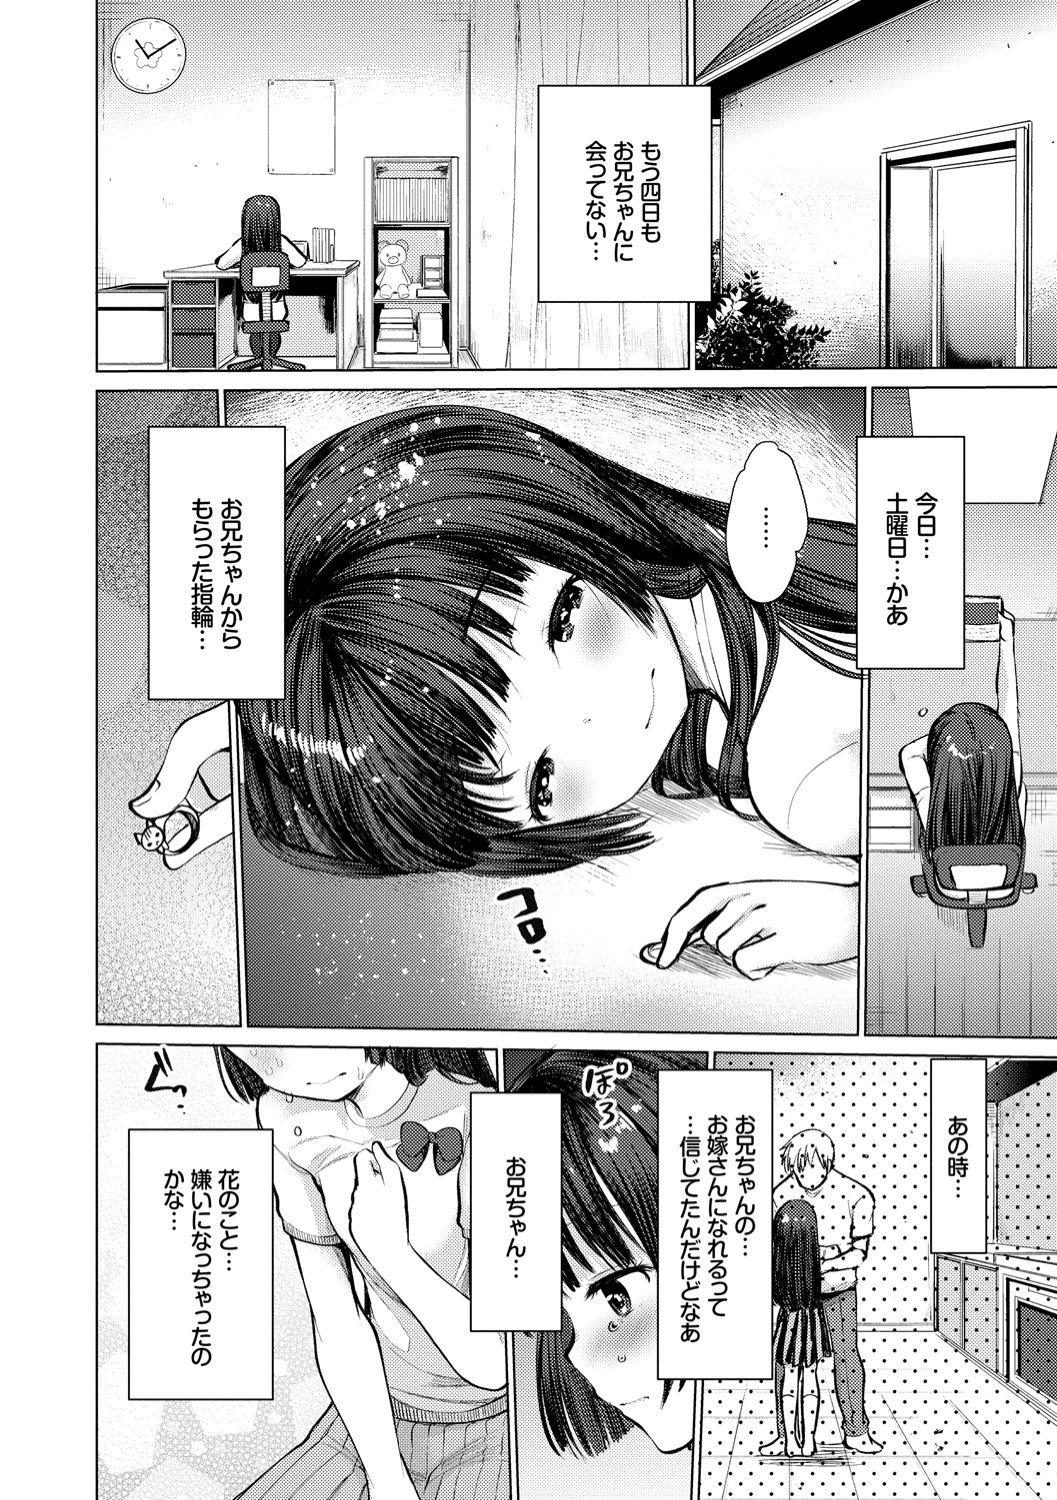 Ecchi Daisuki Seichouki - A Growing Girl Loves Sex. 27